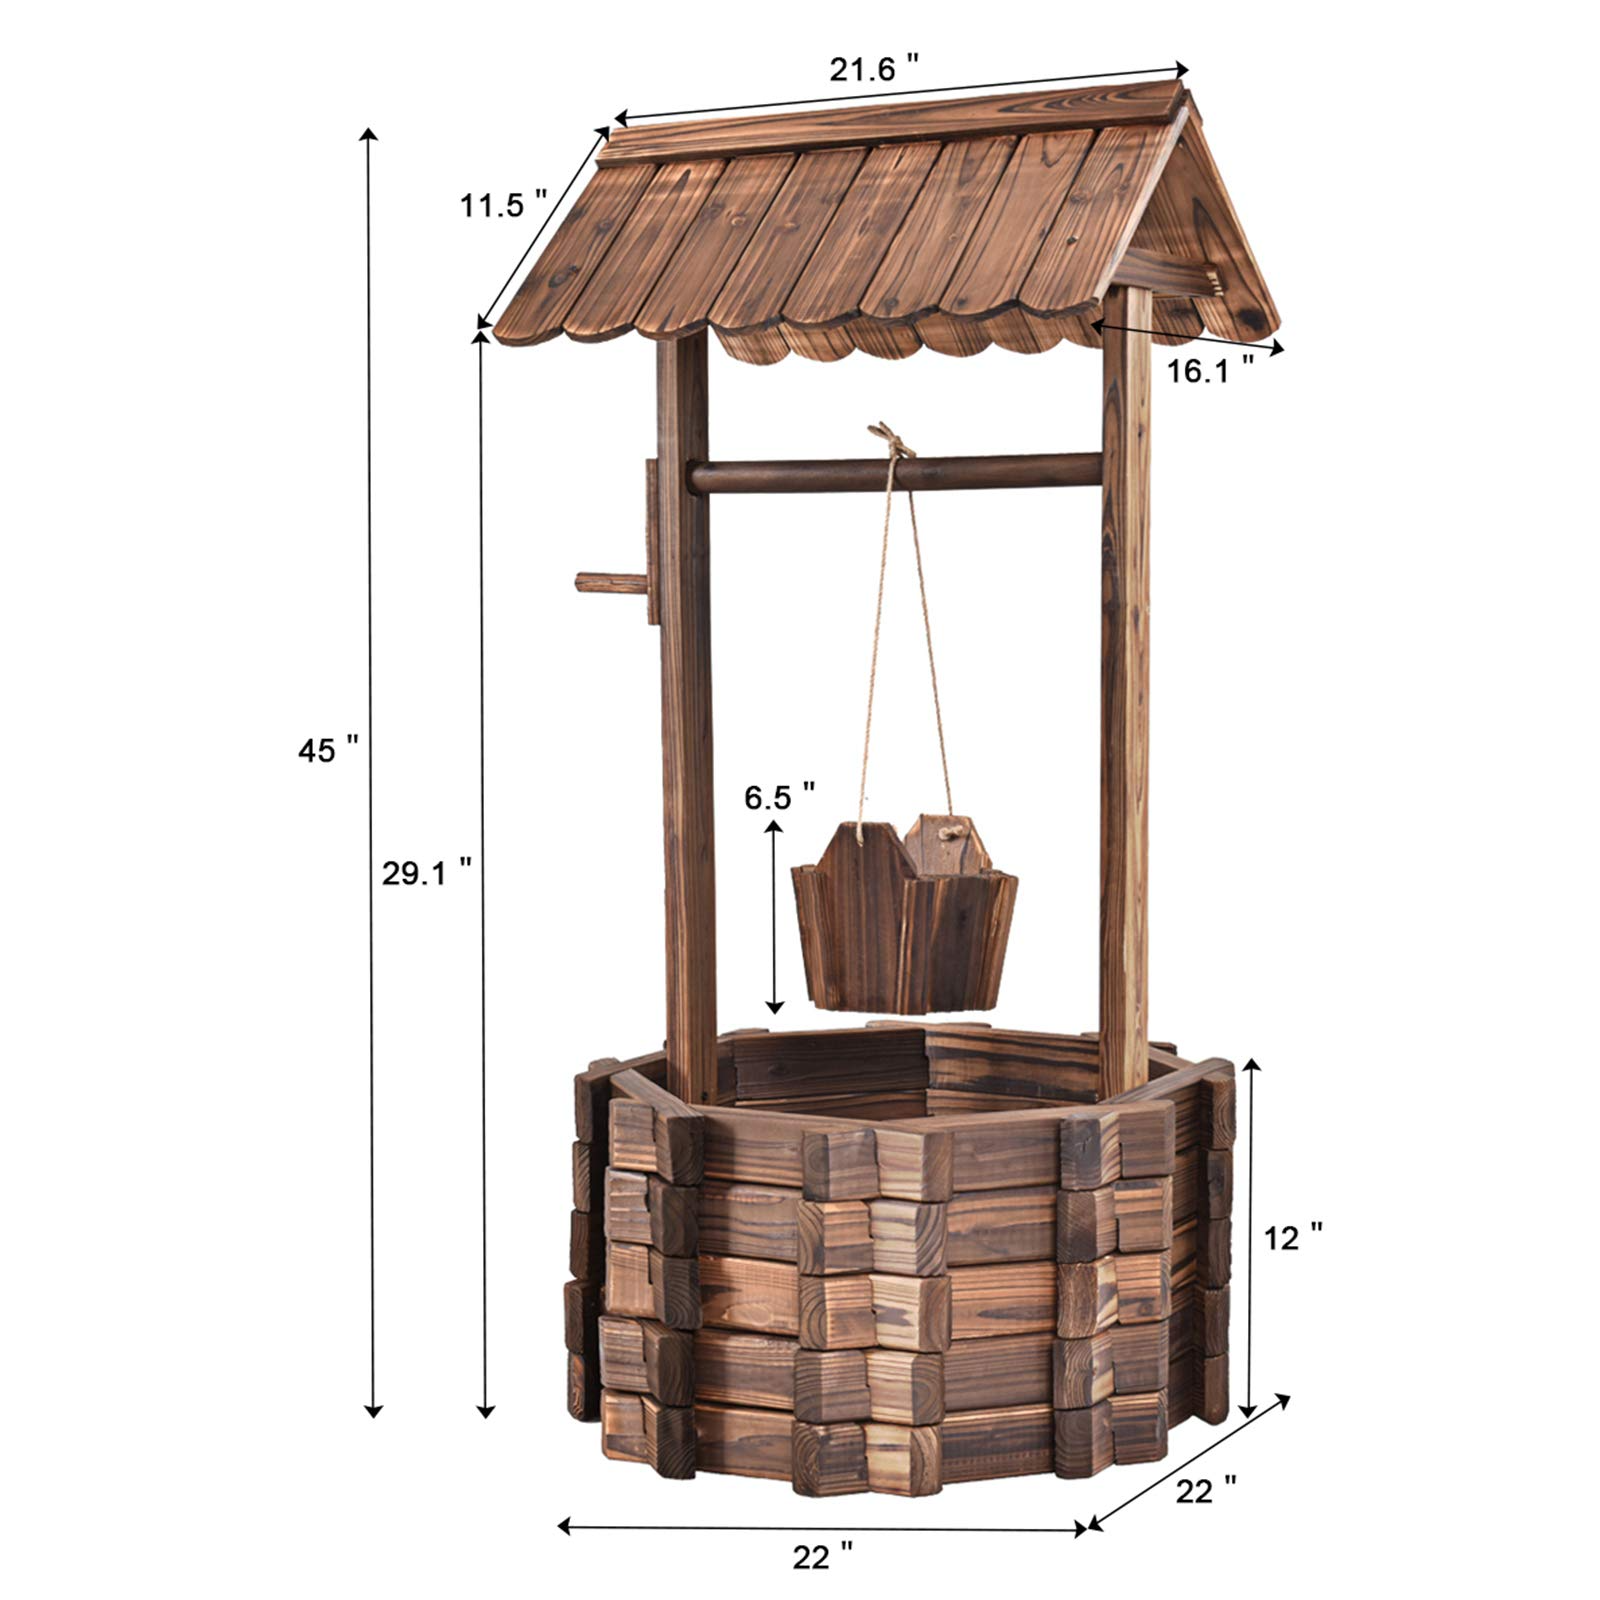 Giantex Outdoor Wooden Wishing Well with Hanging Bucket